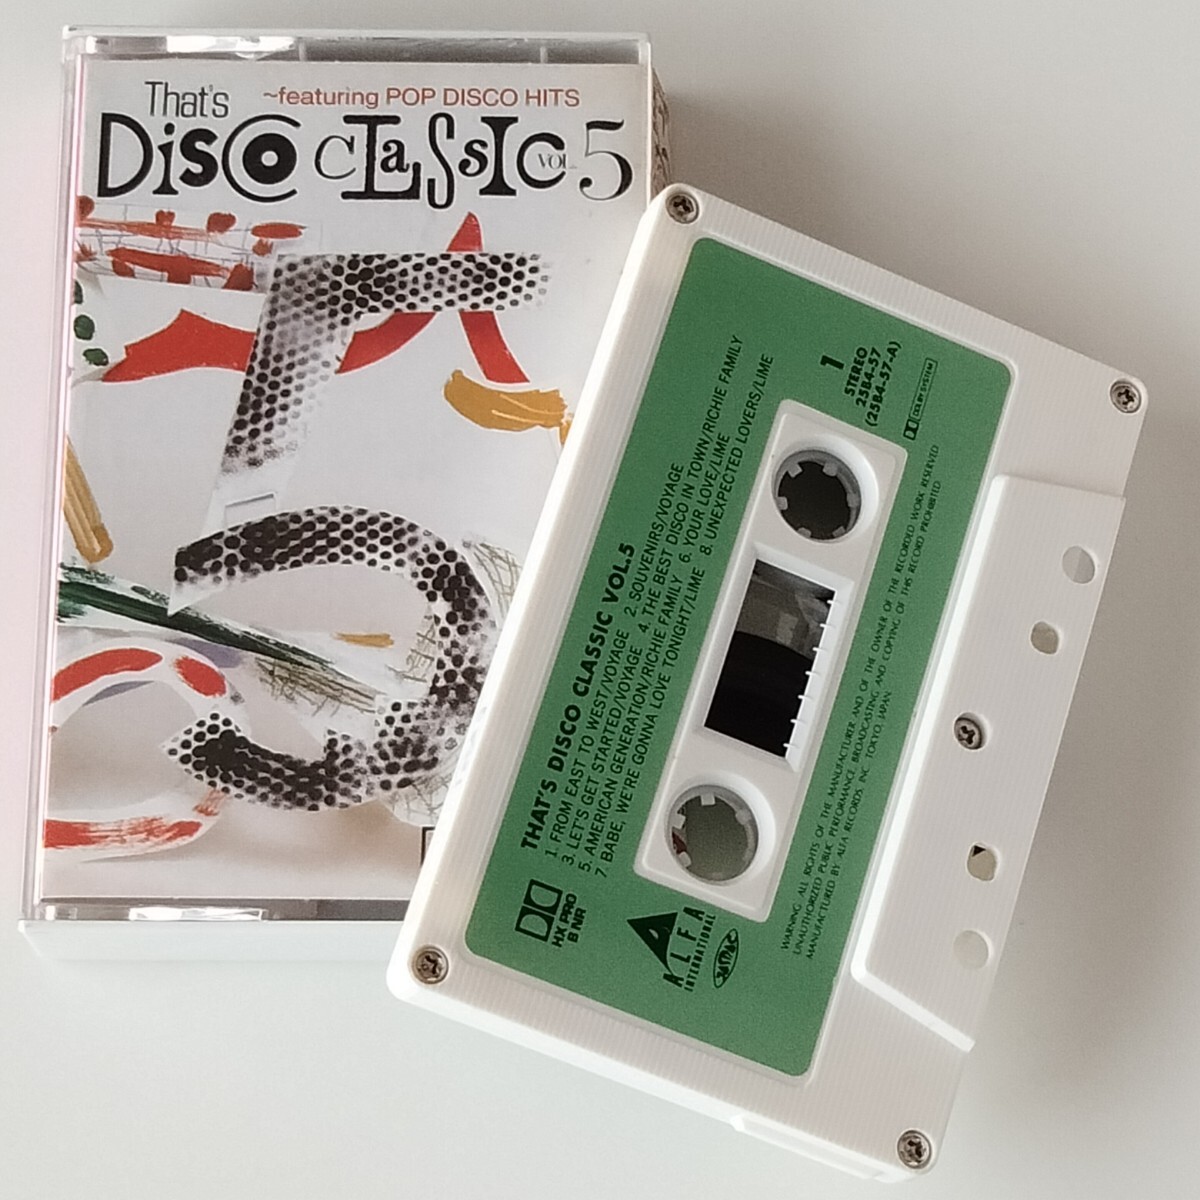 【カセットテープ】THAT'S DISCO CLASSIC VOL.5(25B4-57)ザッツ・ディスコ・クラシック/ALFA/POP DISCO HITS/VOYAGE/BOYS TOWN GANG_画像1